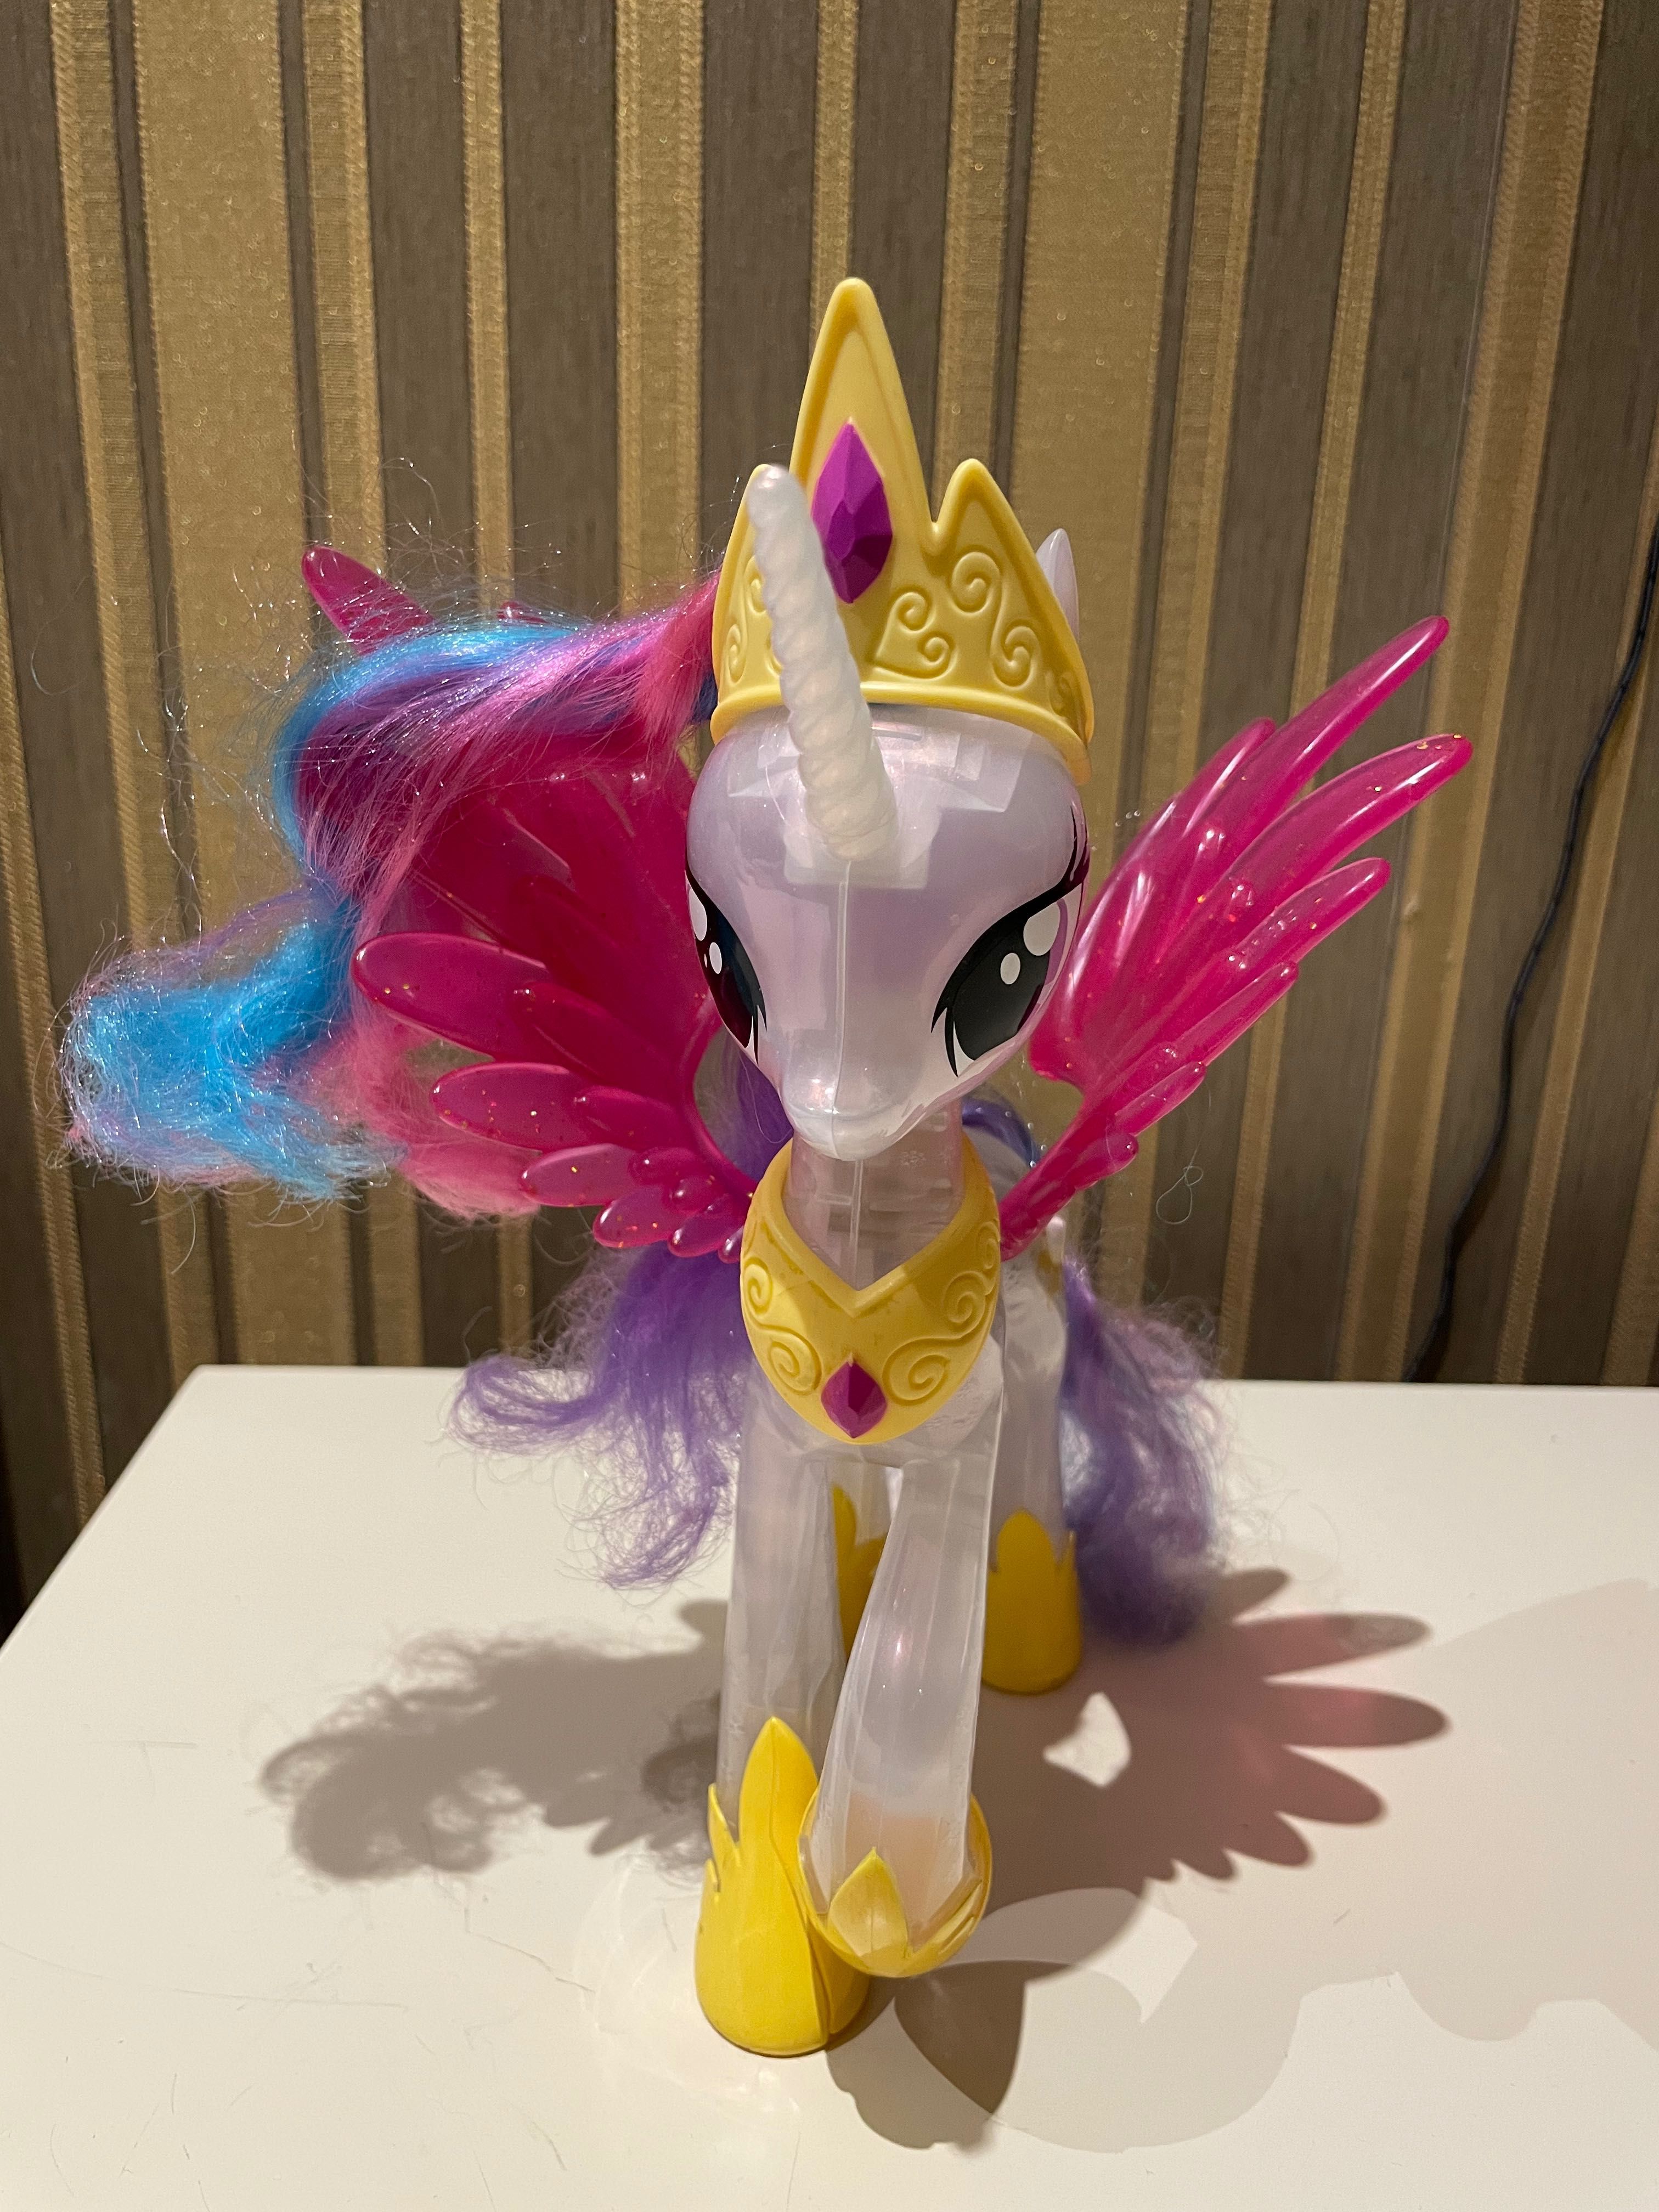 Интерактивная игрушка My Little Pony Принцеса Селестия